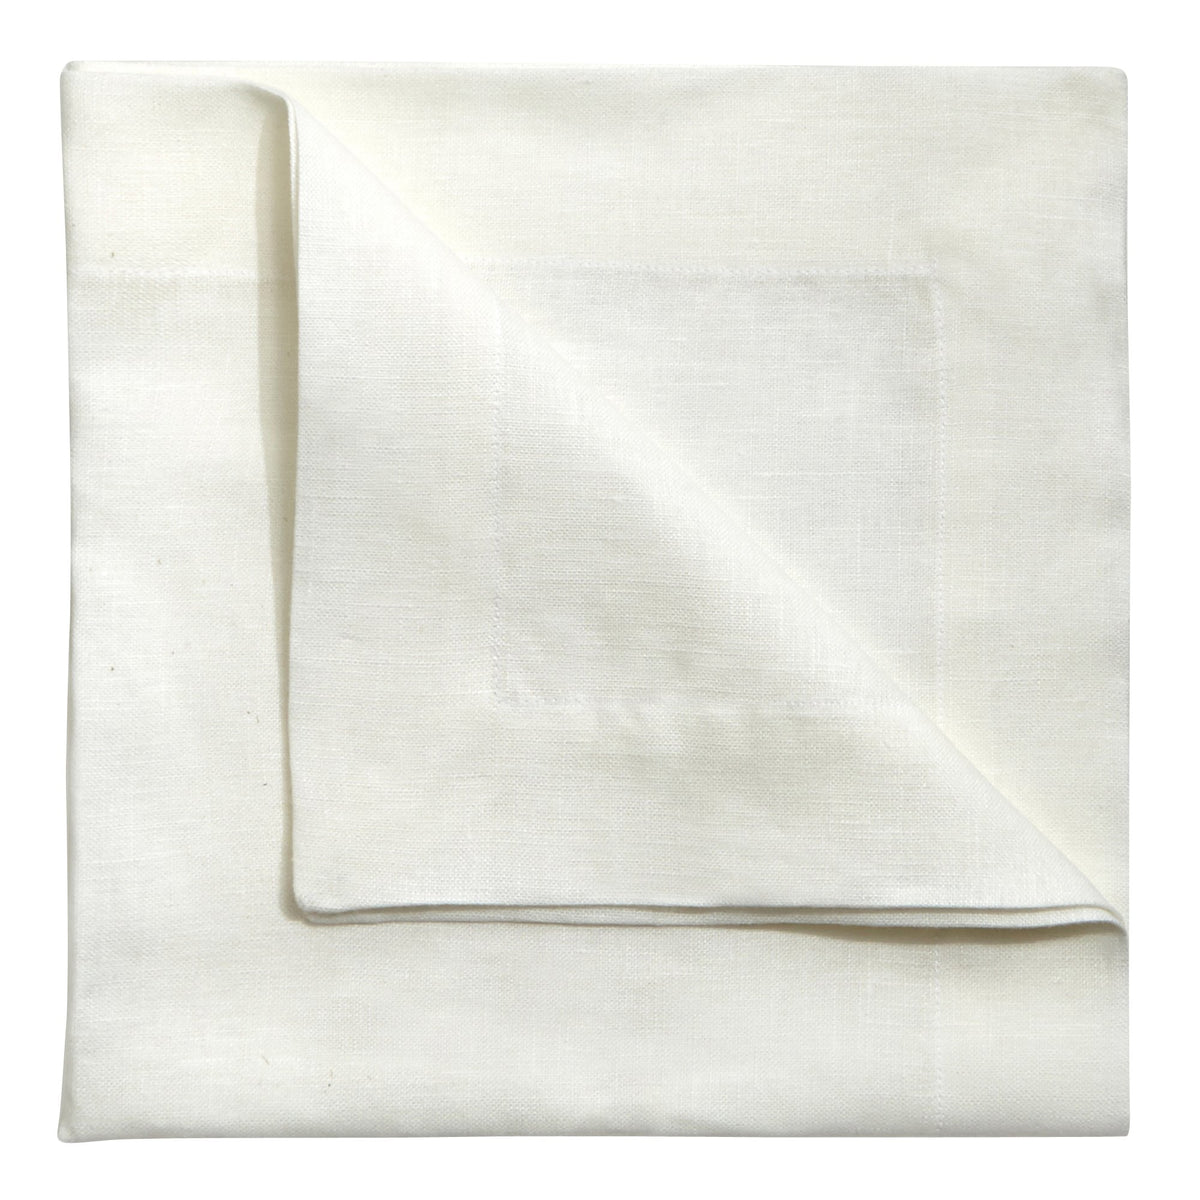 Off White Linen Napkin, Set of 4